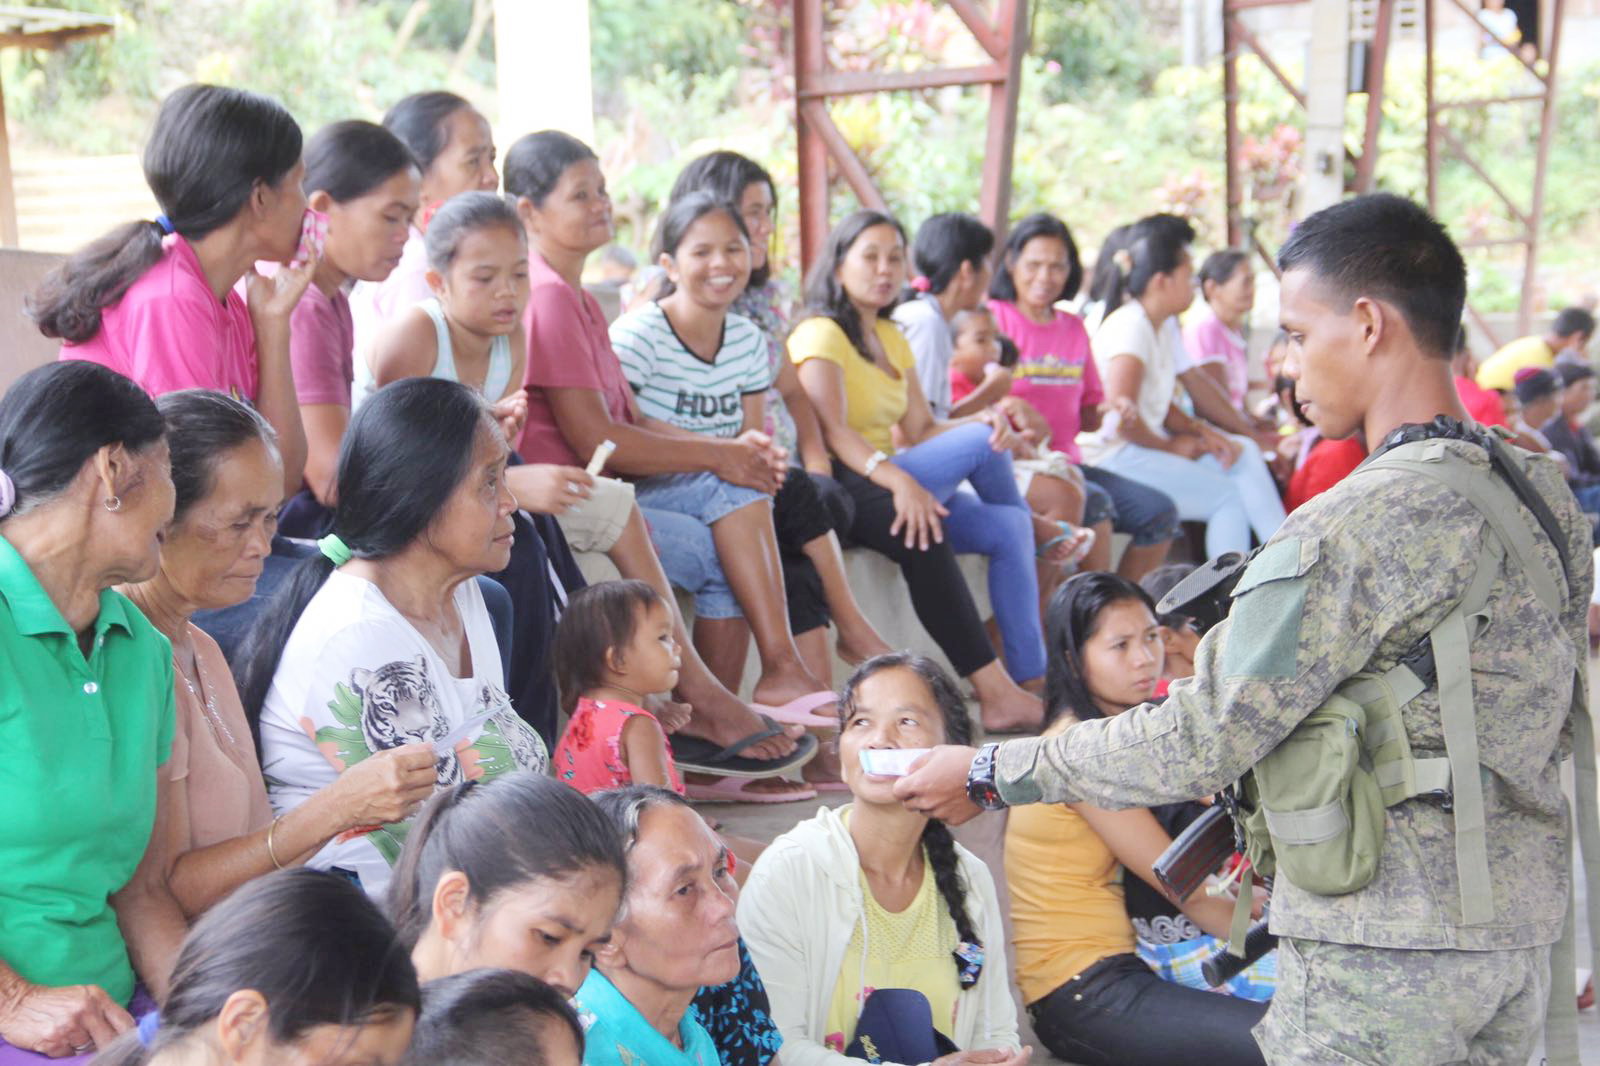 NPA leaders surrender in Bukidnon